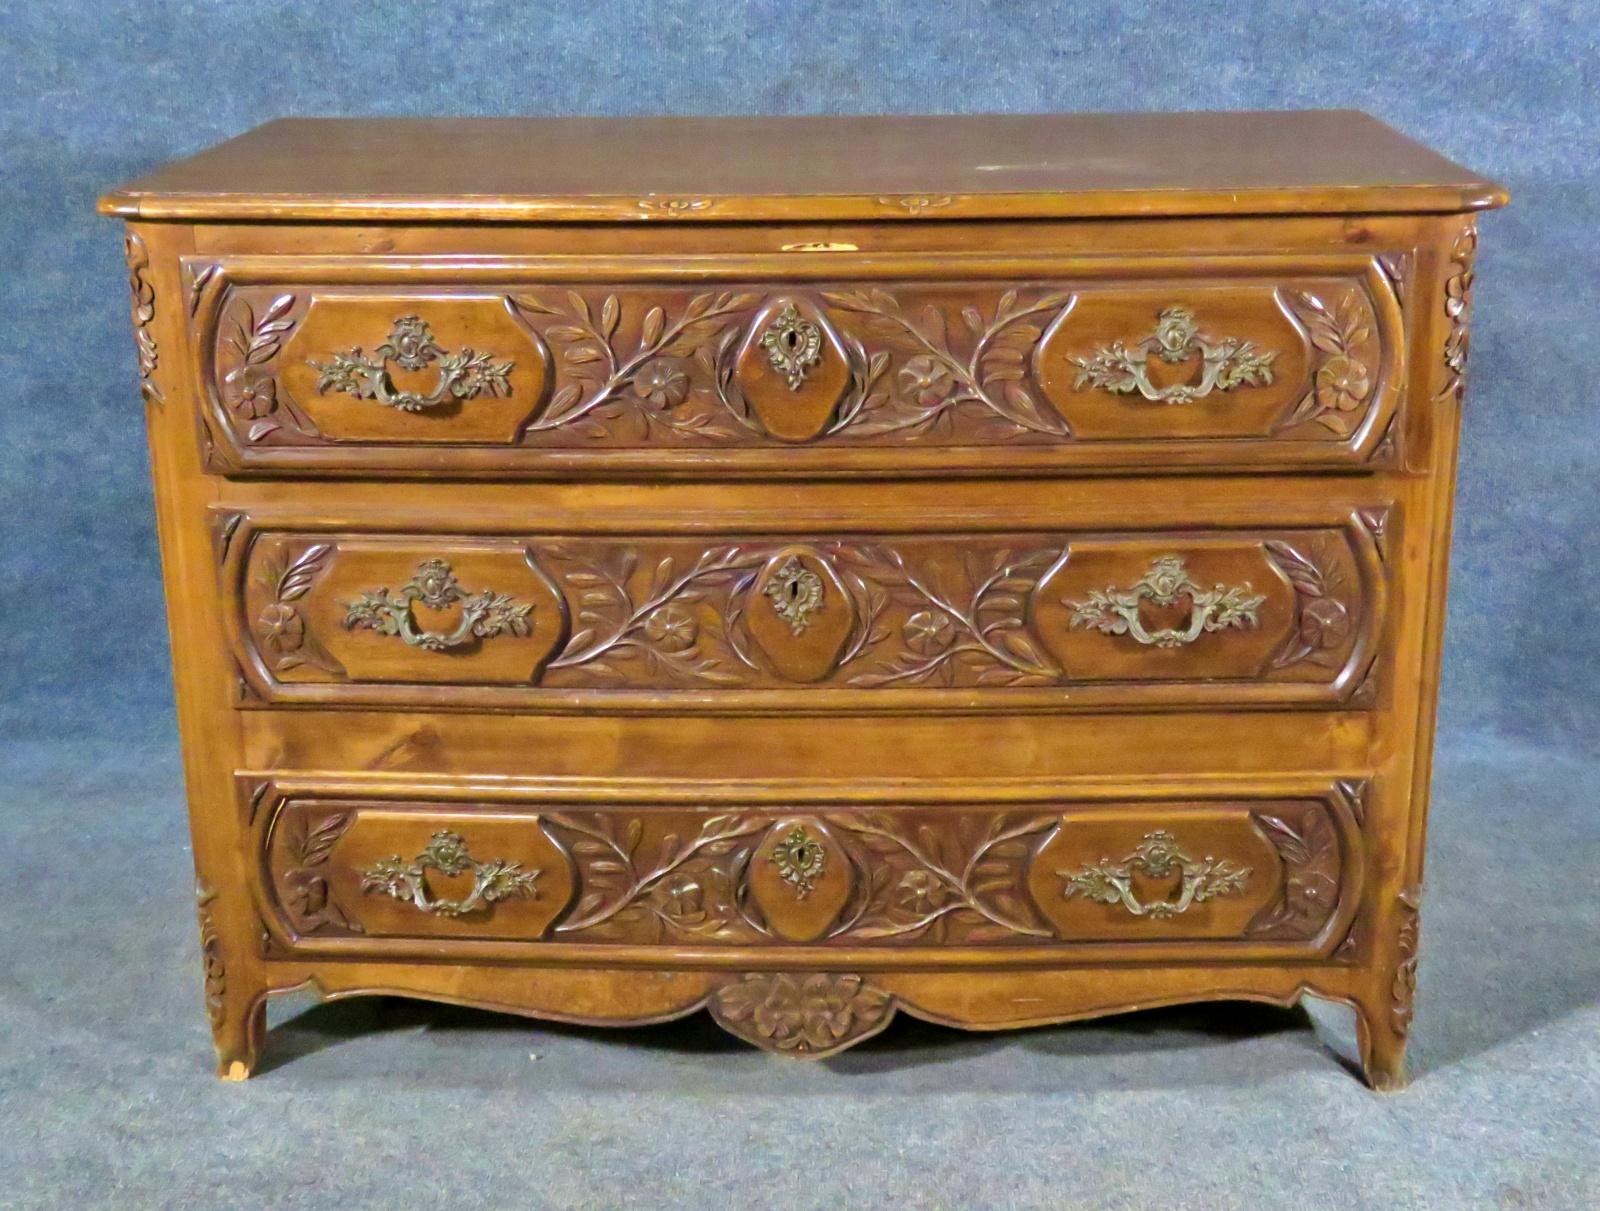 3 drawers. Floral detail in wood. Measures: 33 3/4